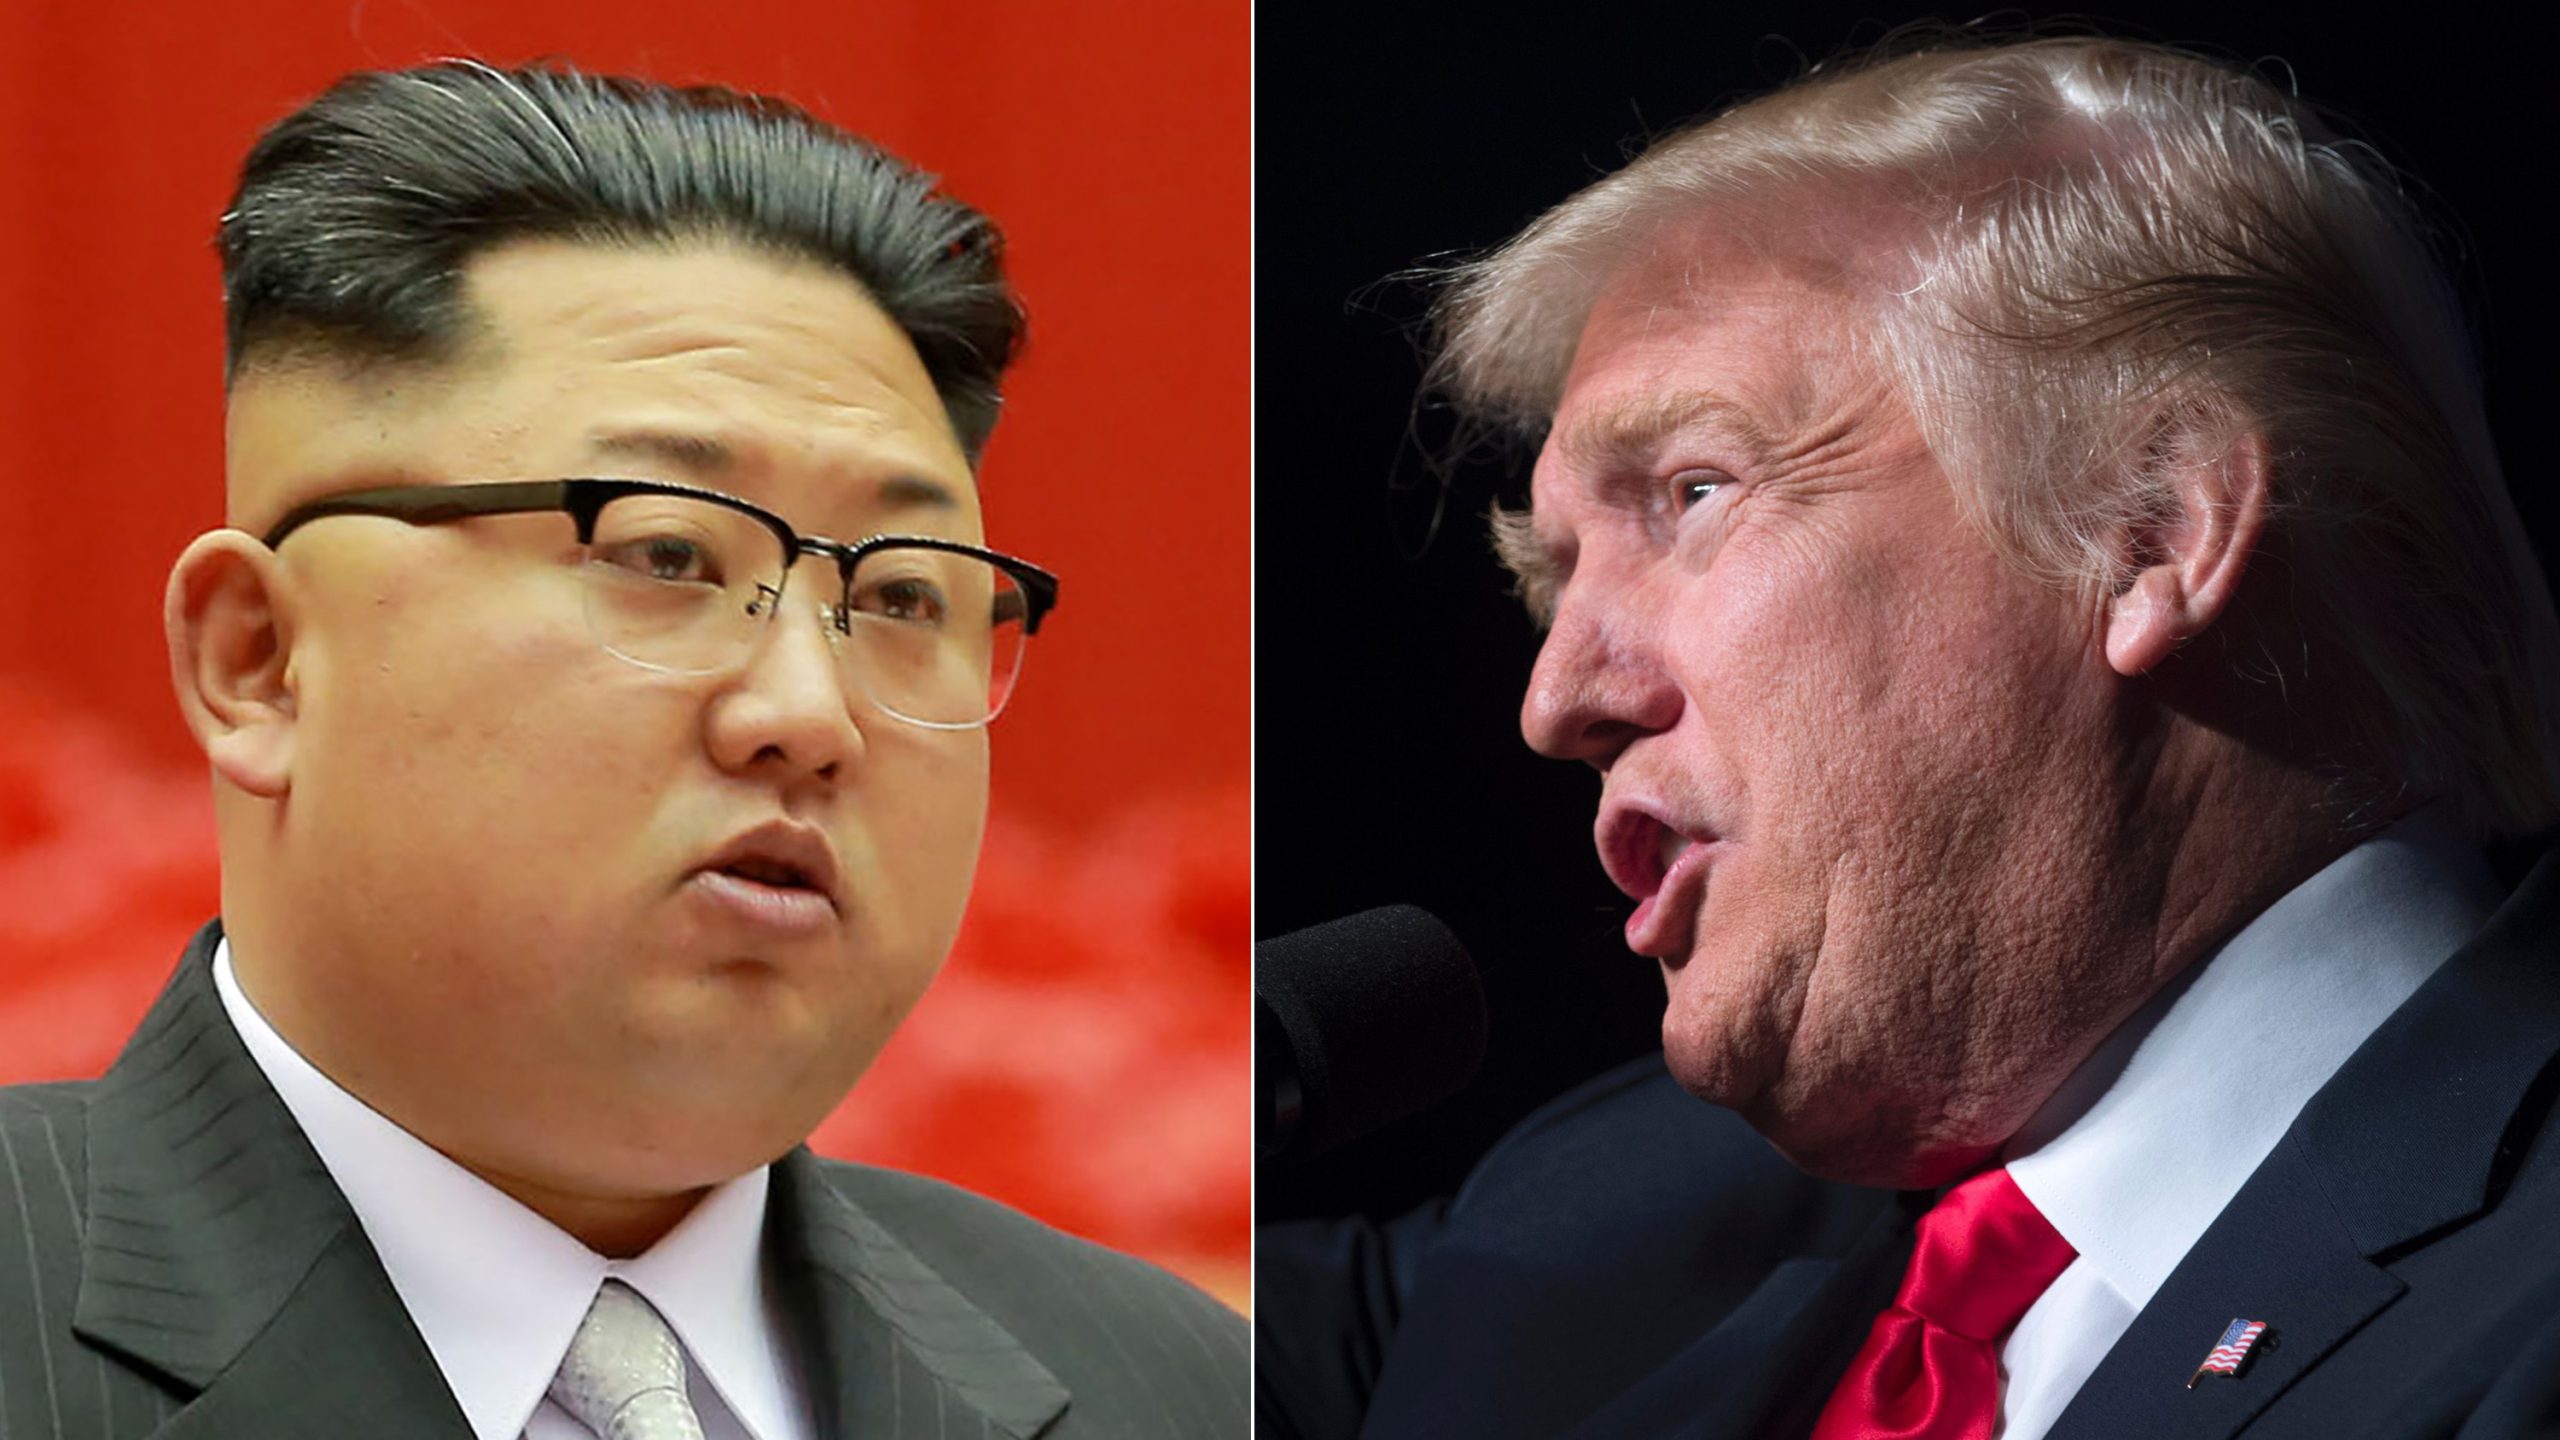 Αλλαγή πορείας για τον Ν.Τραμπ: Ανακοίνωσε Σύνοδο Κορυφής με τον Κιμ Γιονγκ Ουν στις 12 Ιουνίου!